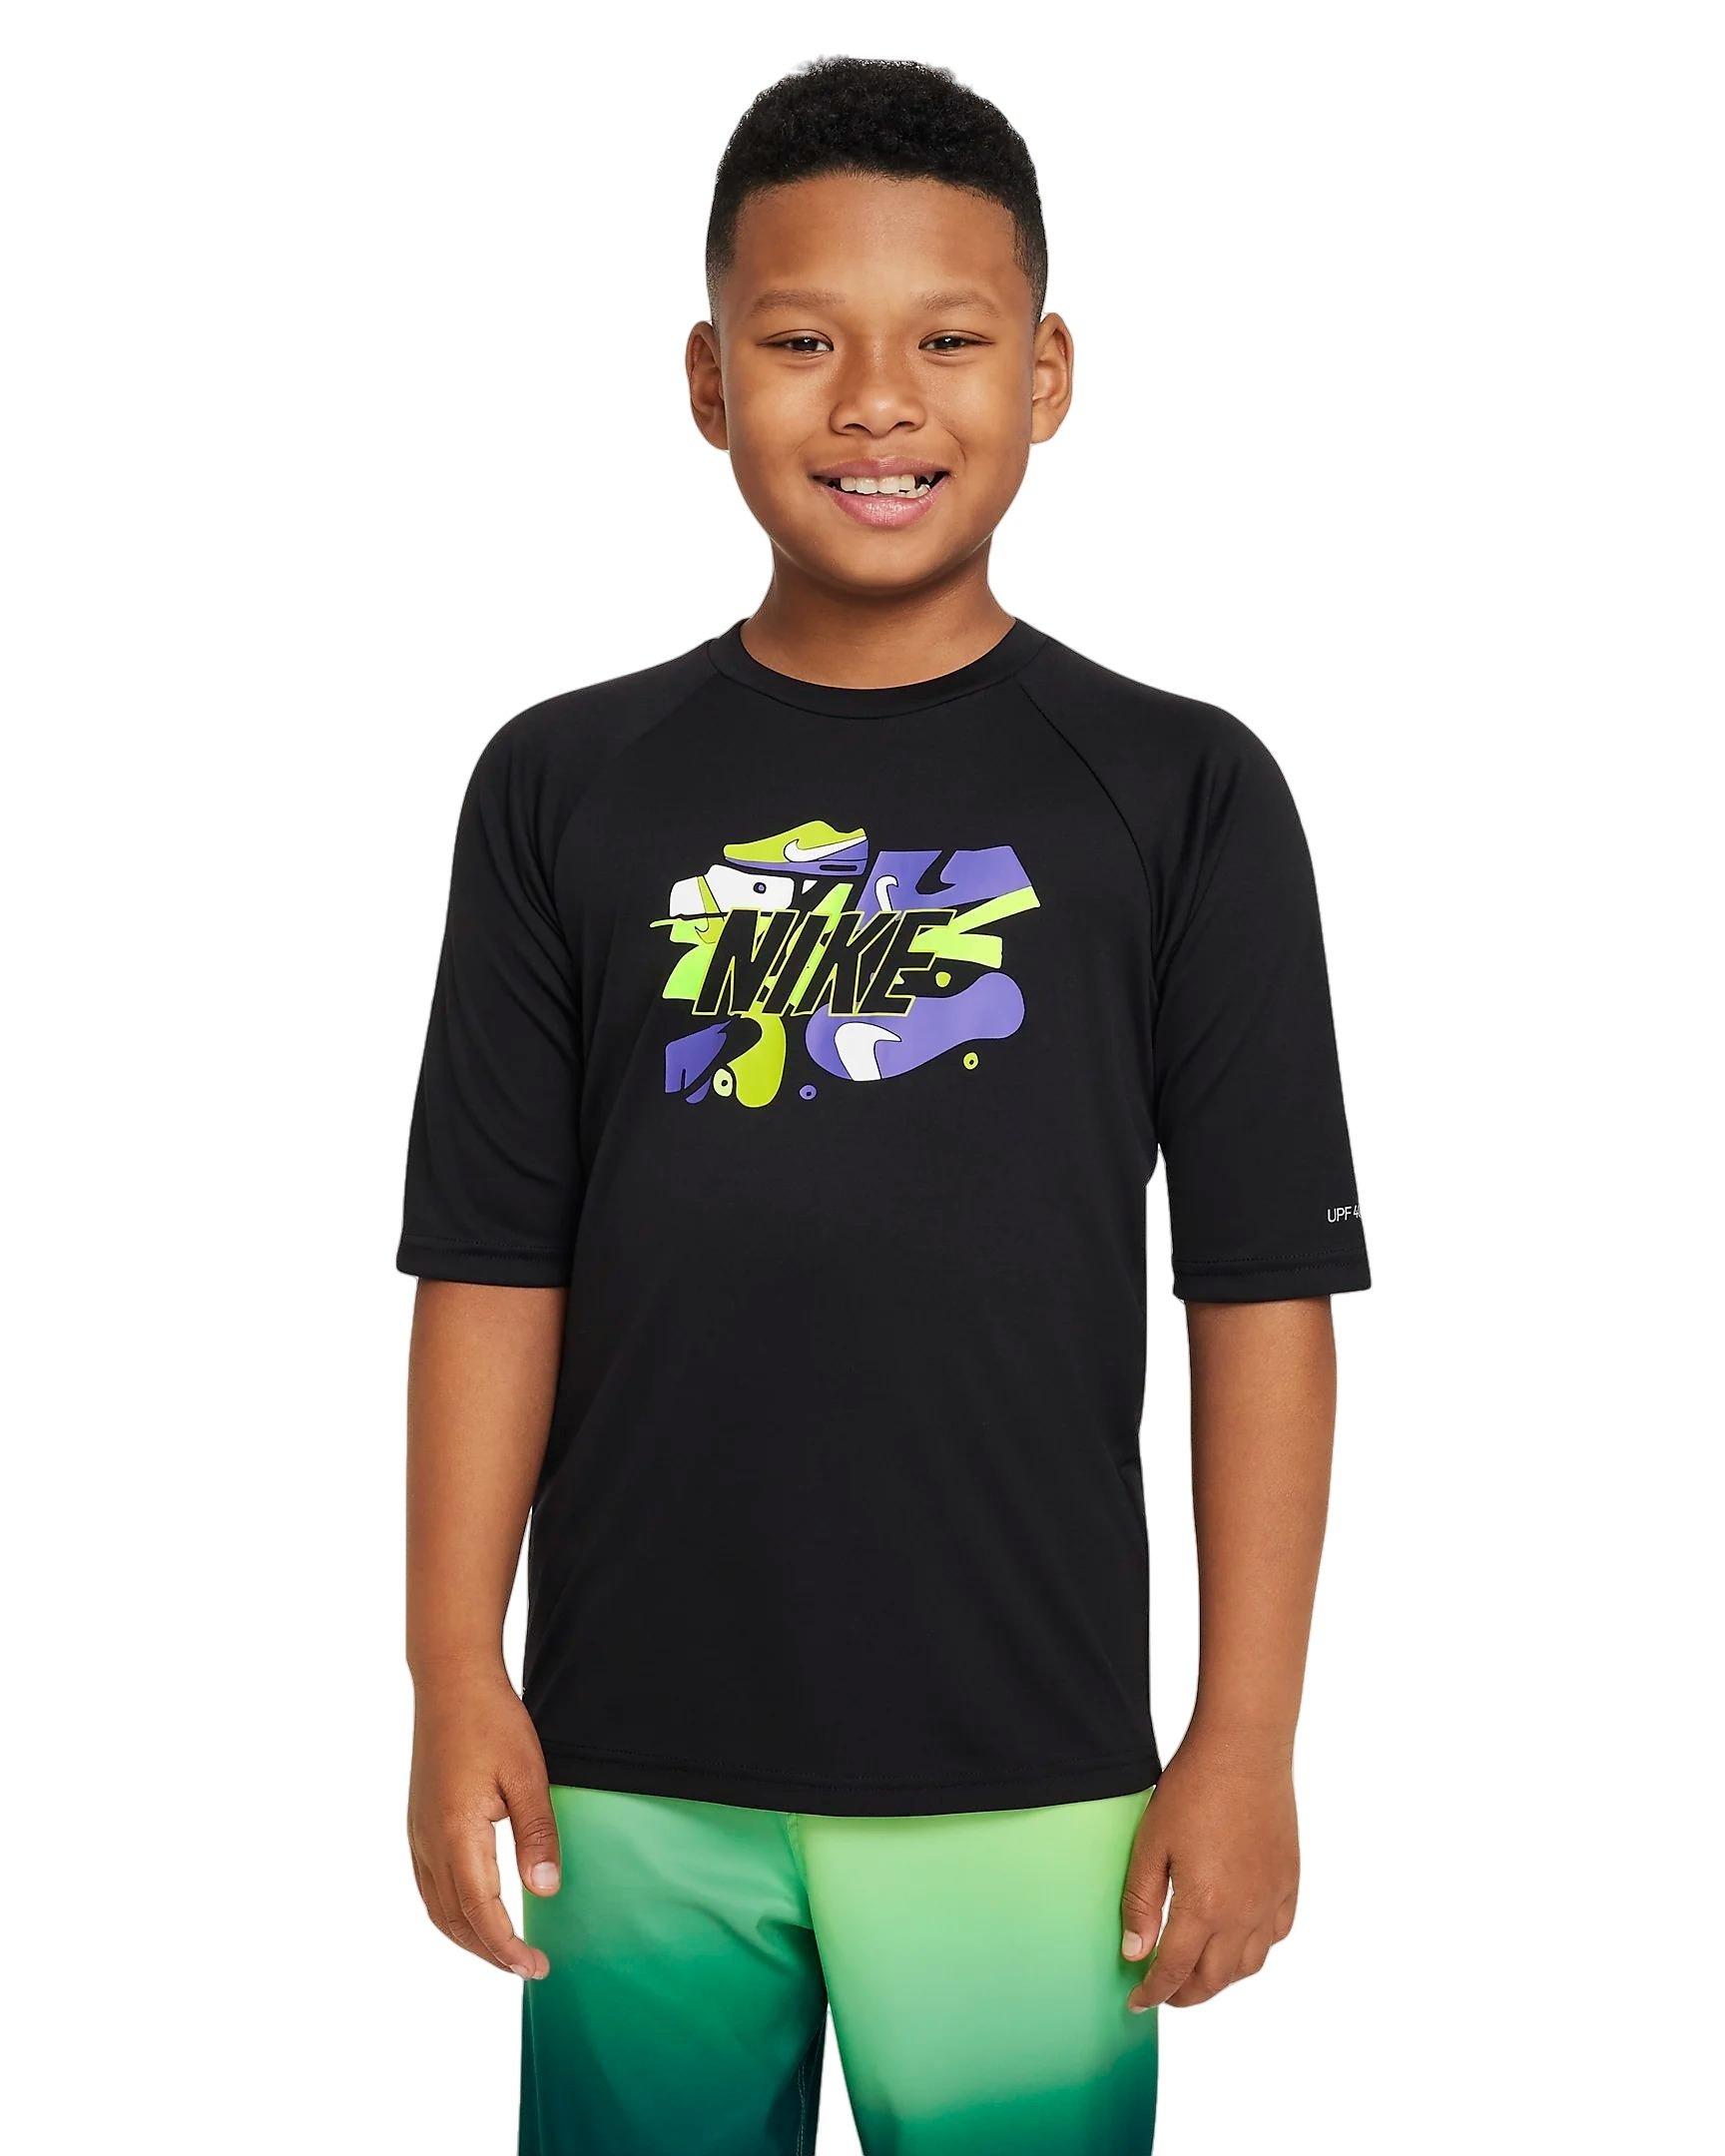 Nike Sun Swoosh T-Shirt - Girls' Grade School